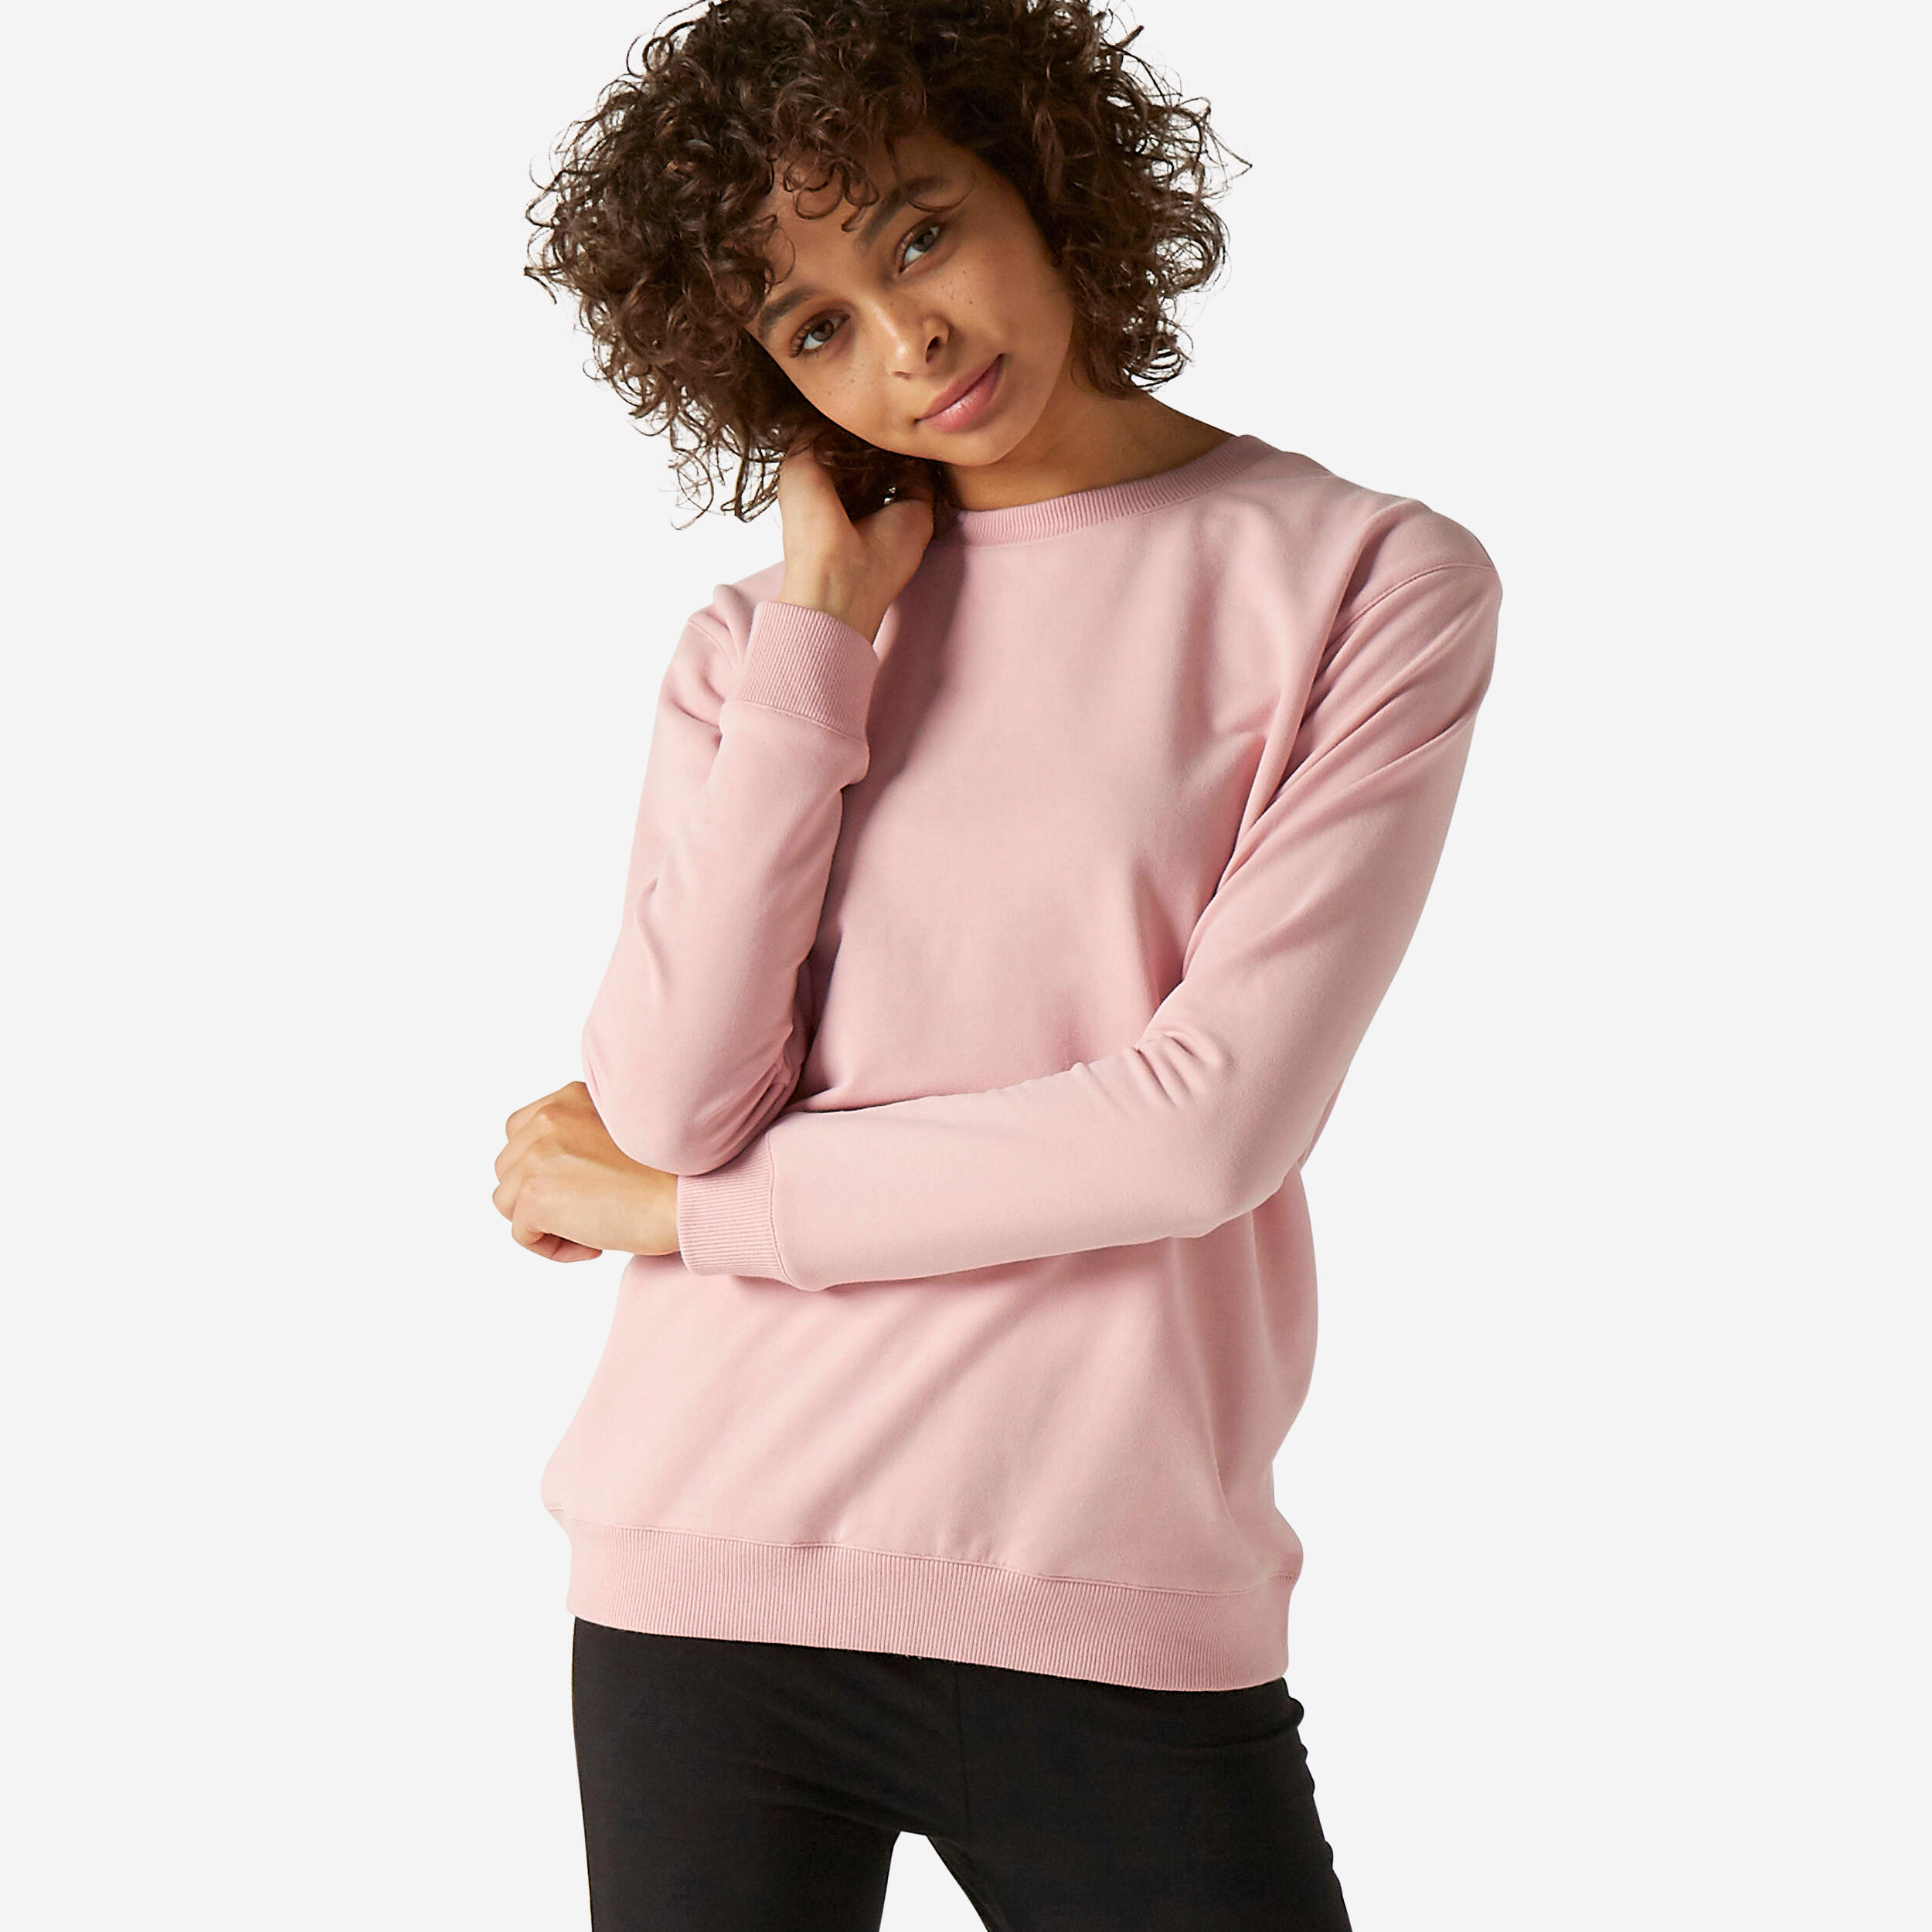 Women's Fitness Sweatshirt 100 - Pink 1/5